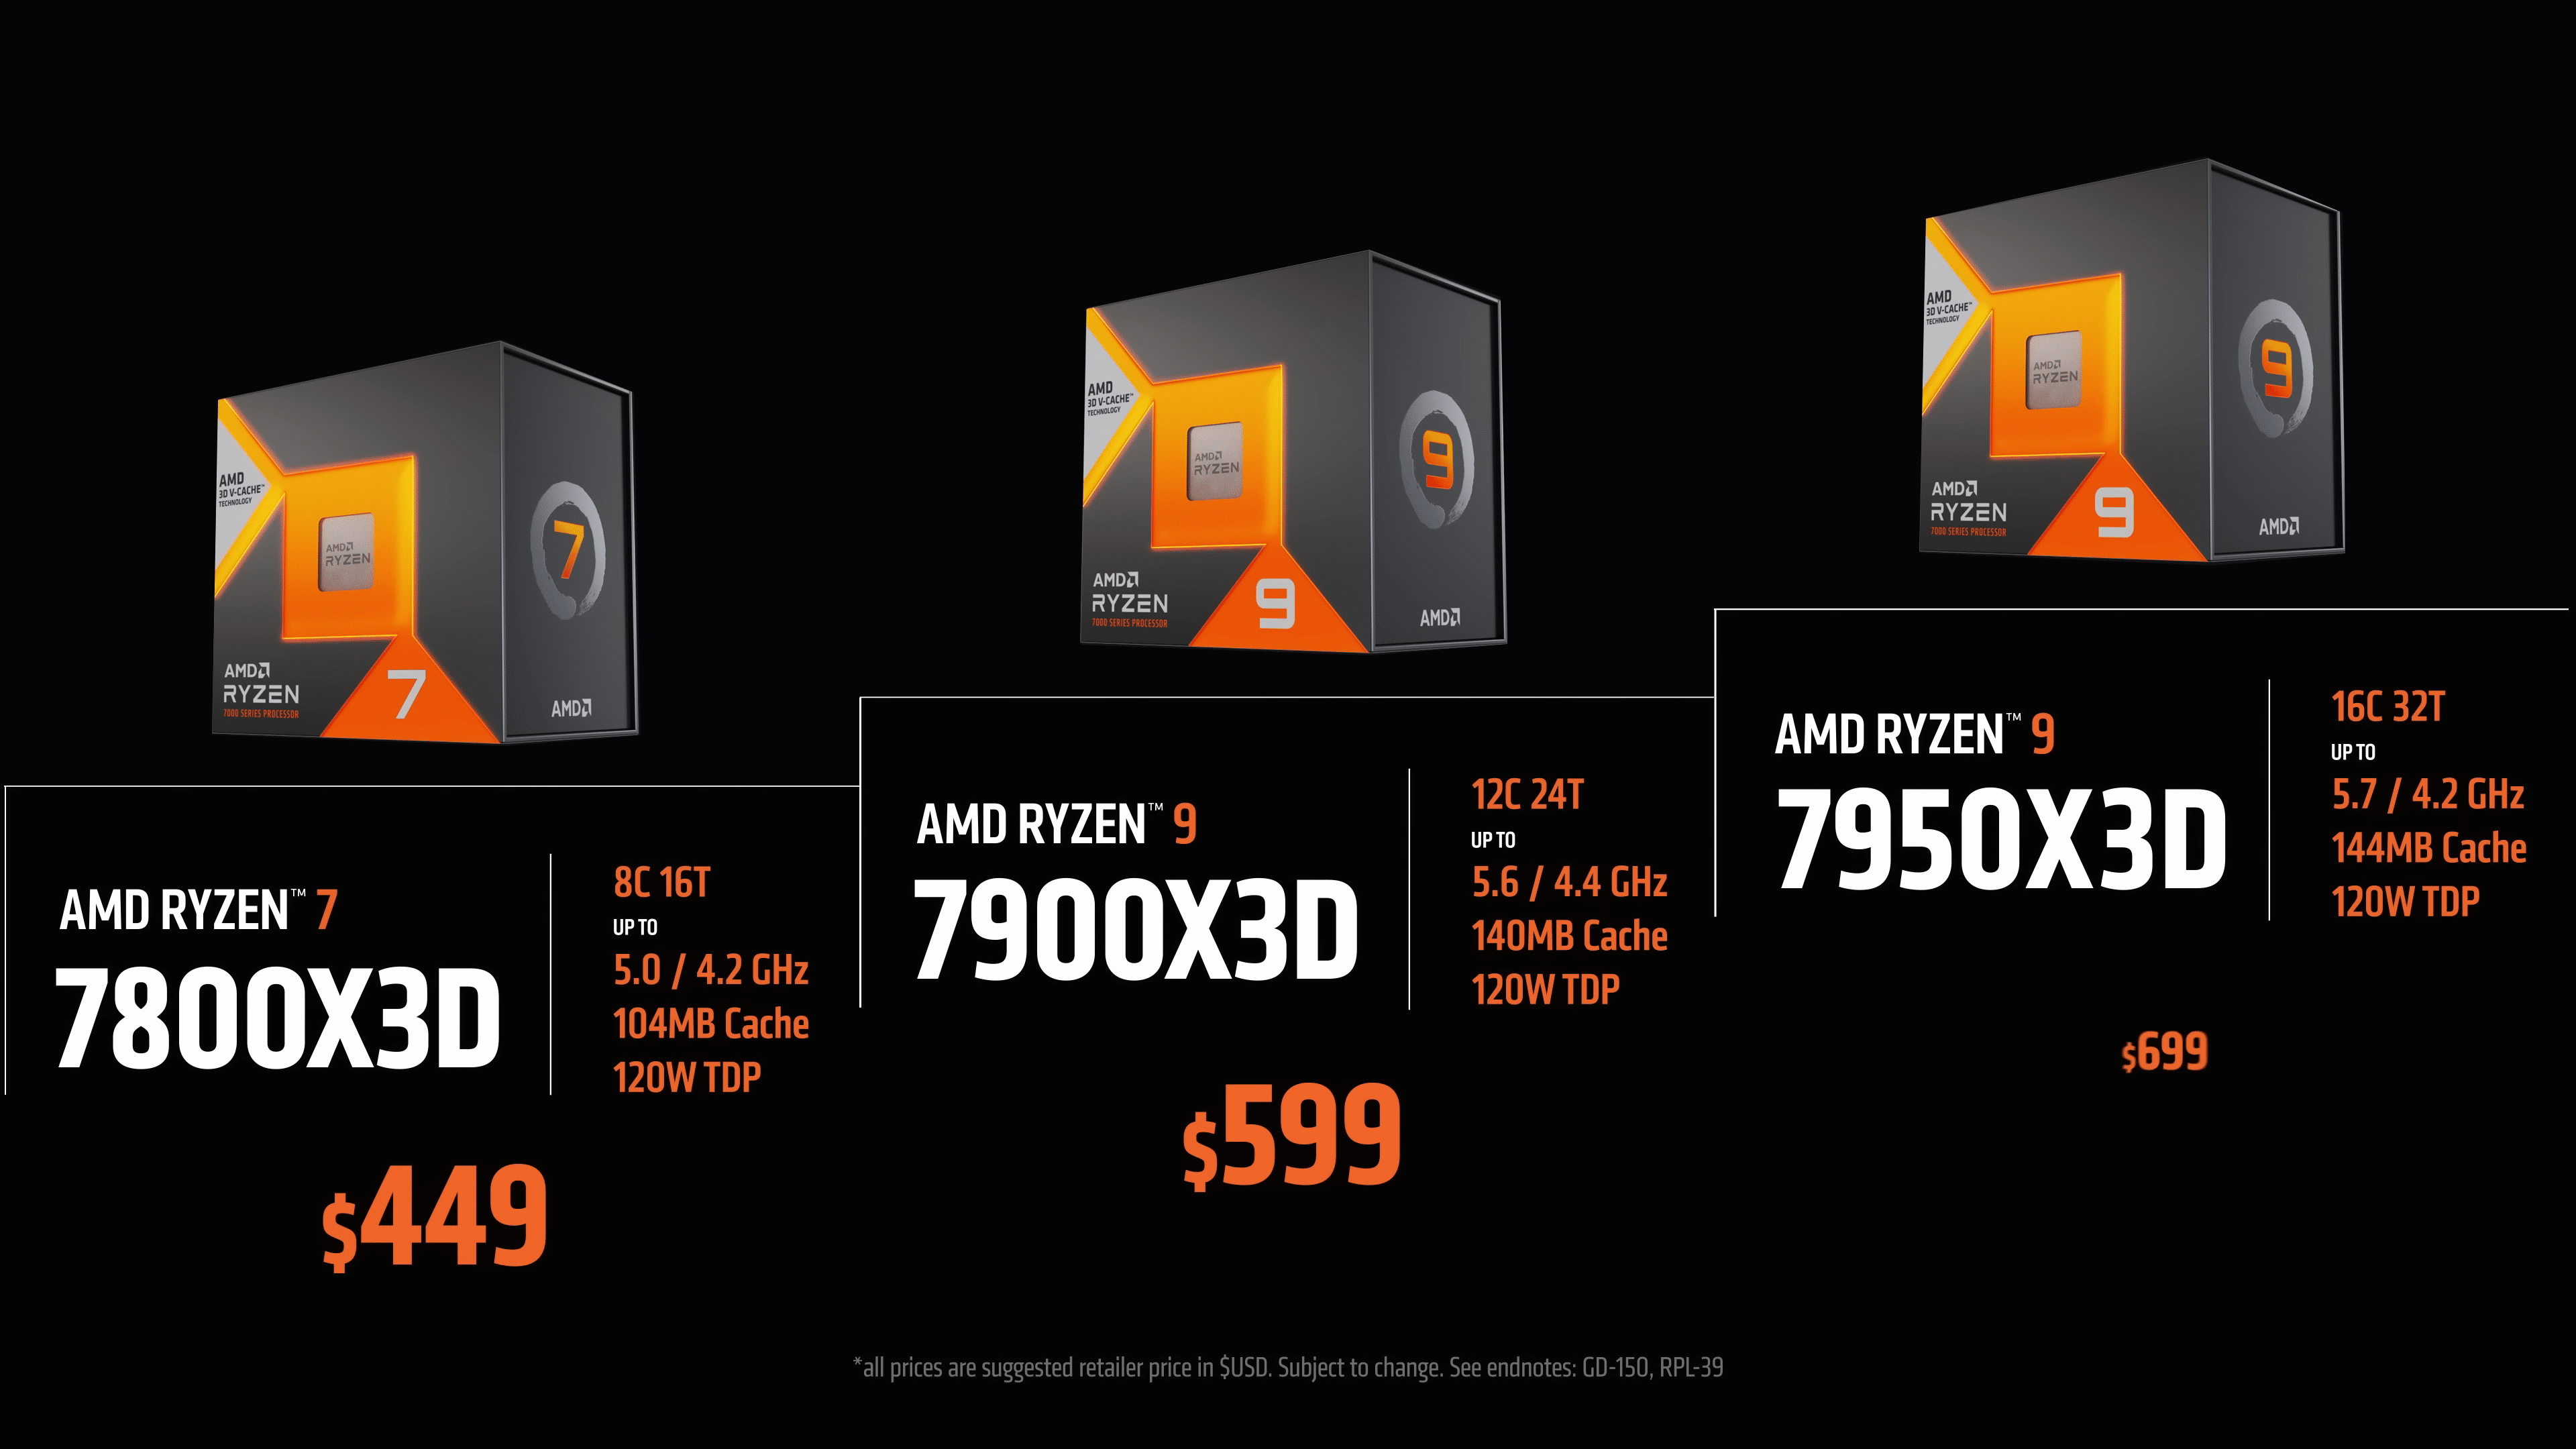 AMD Ryzen 7000X3D Series Launch Beginning Feb 28, 7950X3D $699